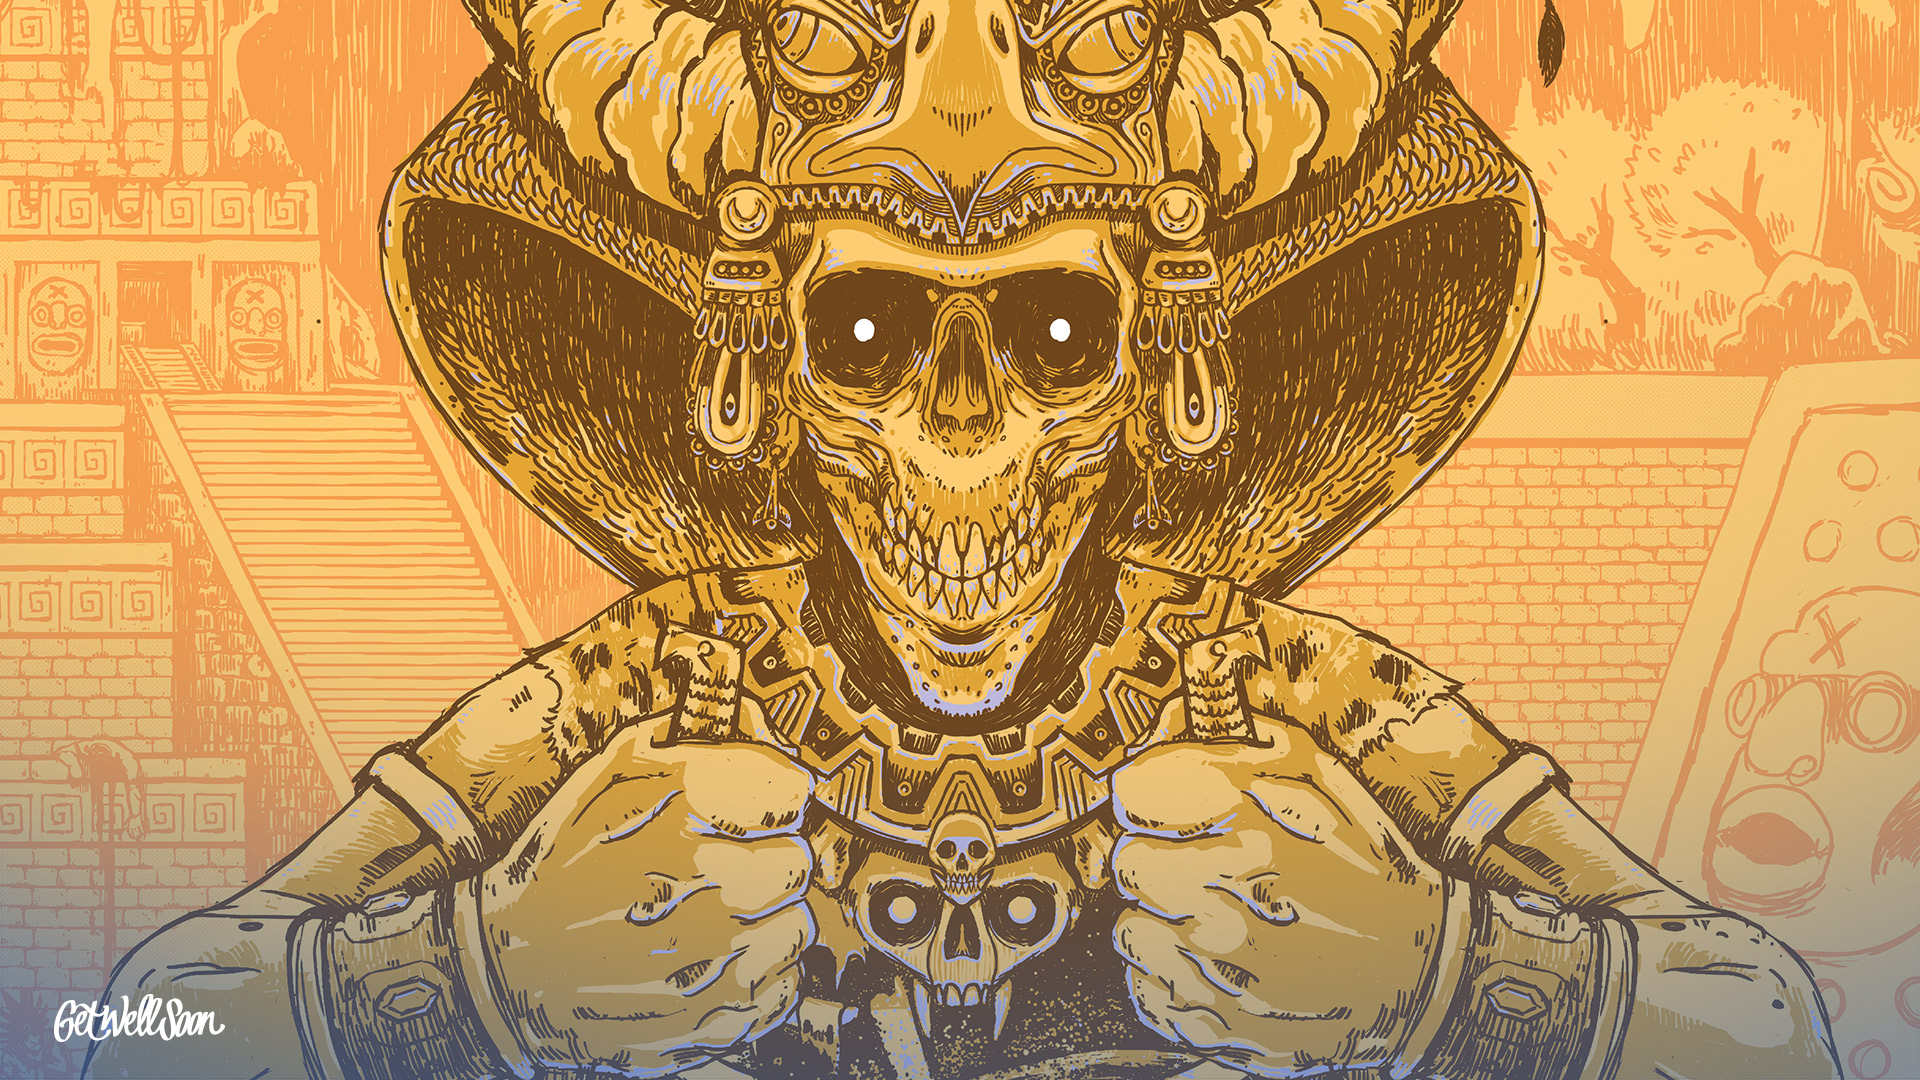 Get Well Soon - Aztec Warrior , HD Wallpaper & Backgrounds